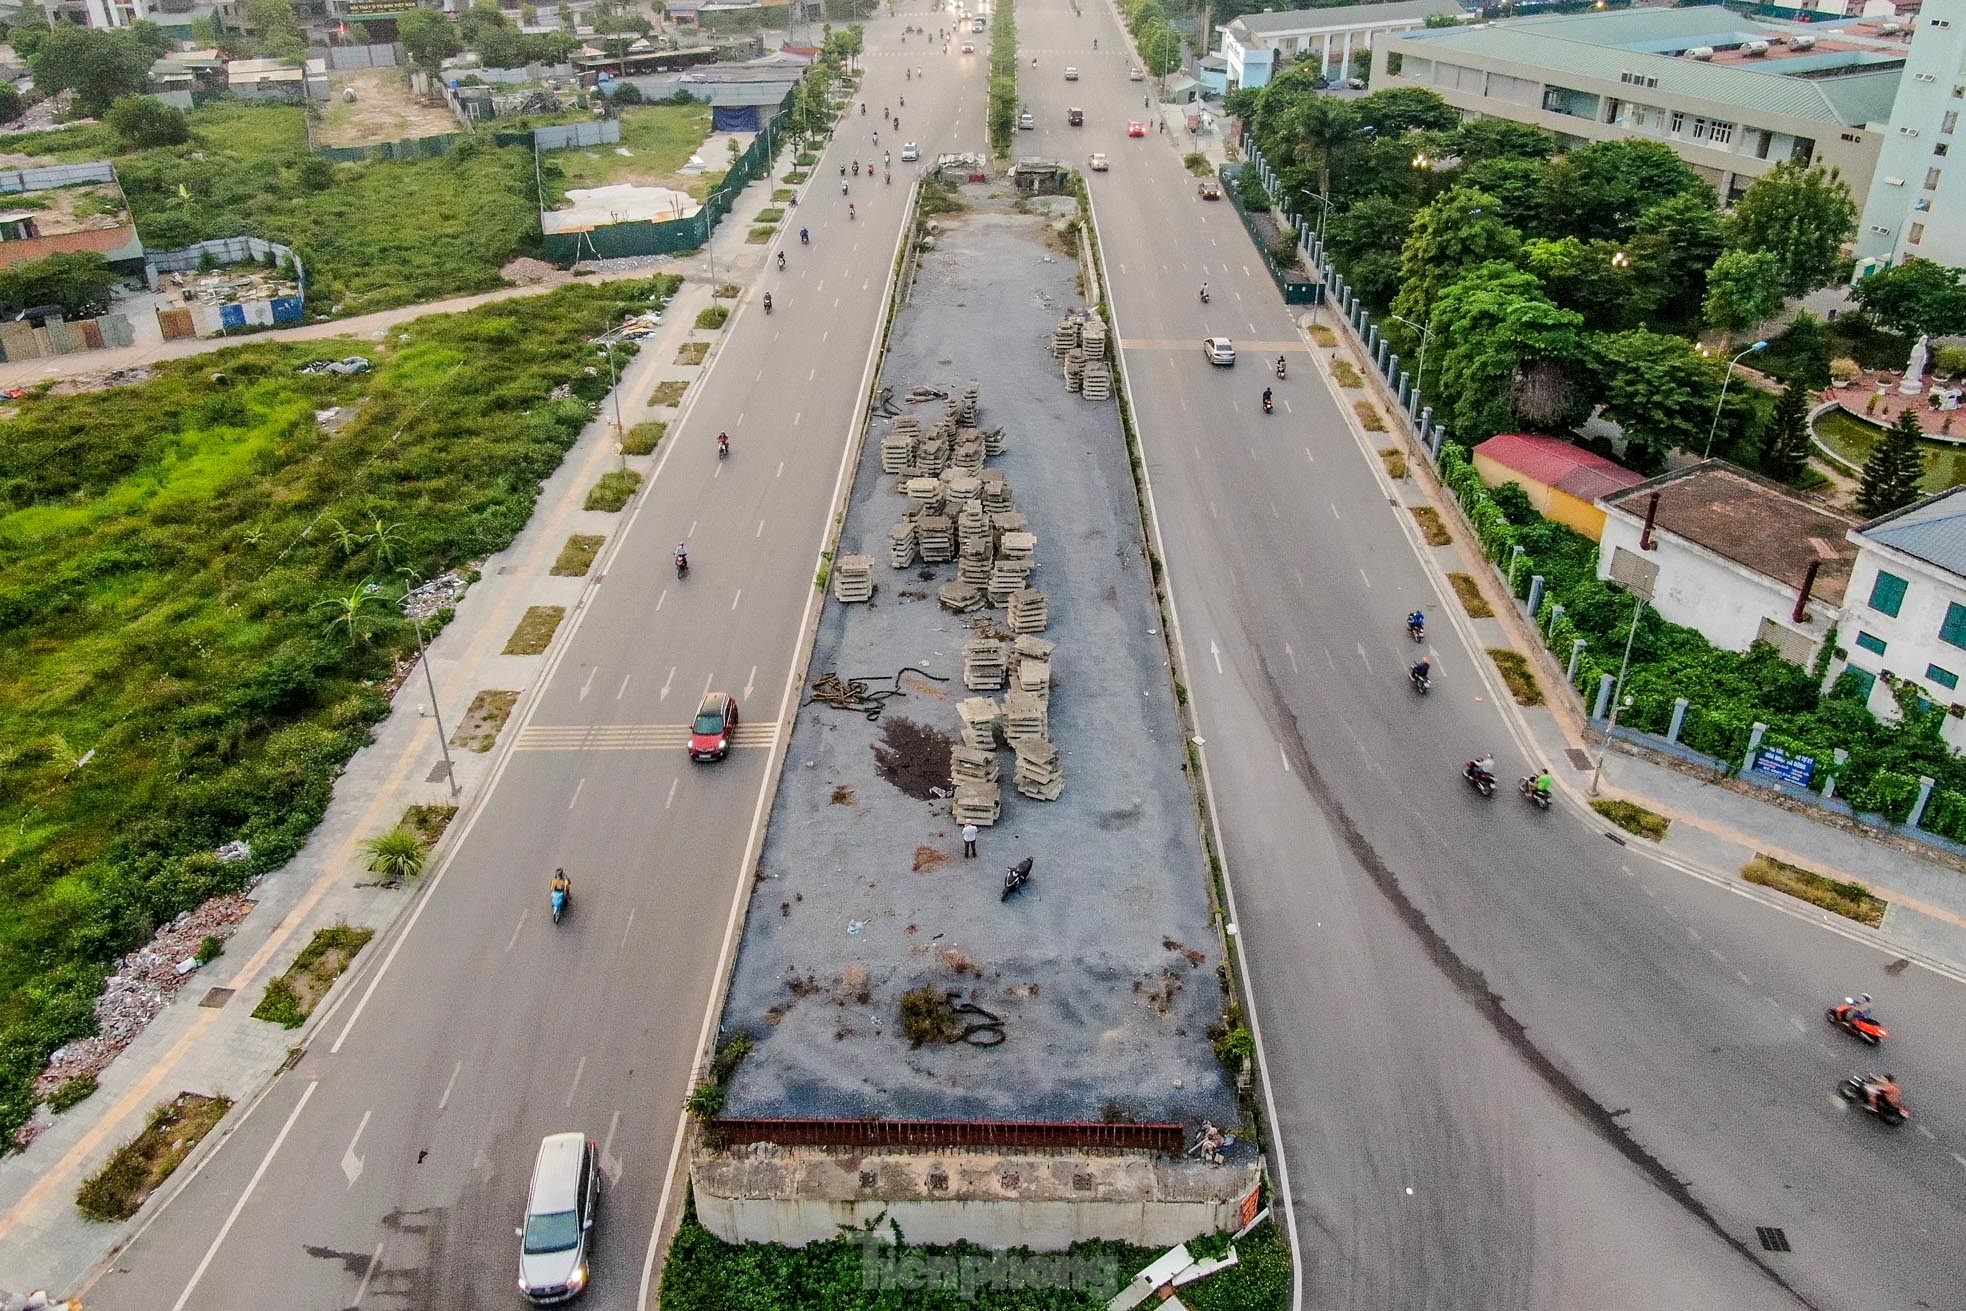 Cầu vượt bỏ hoang trên đại lộ nghìn tỷ ở Hà Nội - Ảnh 1